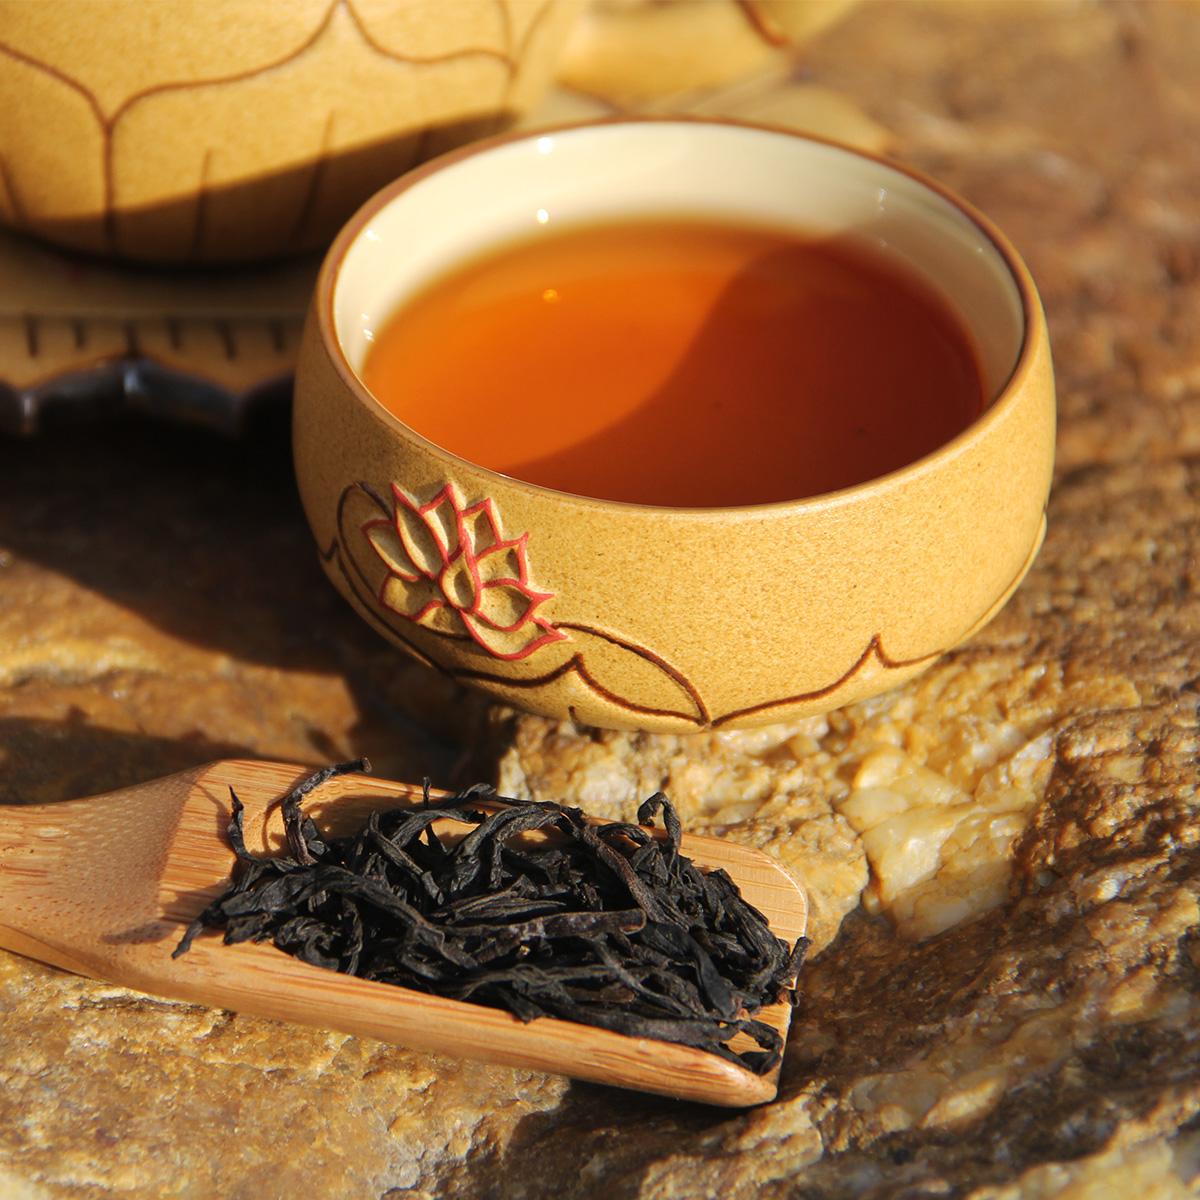 武夷岩茶的分类:大红袍,名枞,肉桂,水仙,奇种